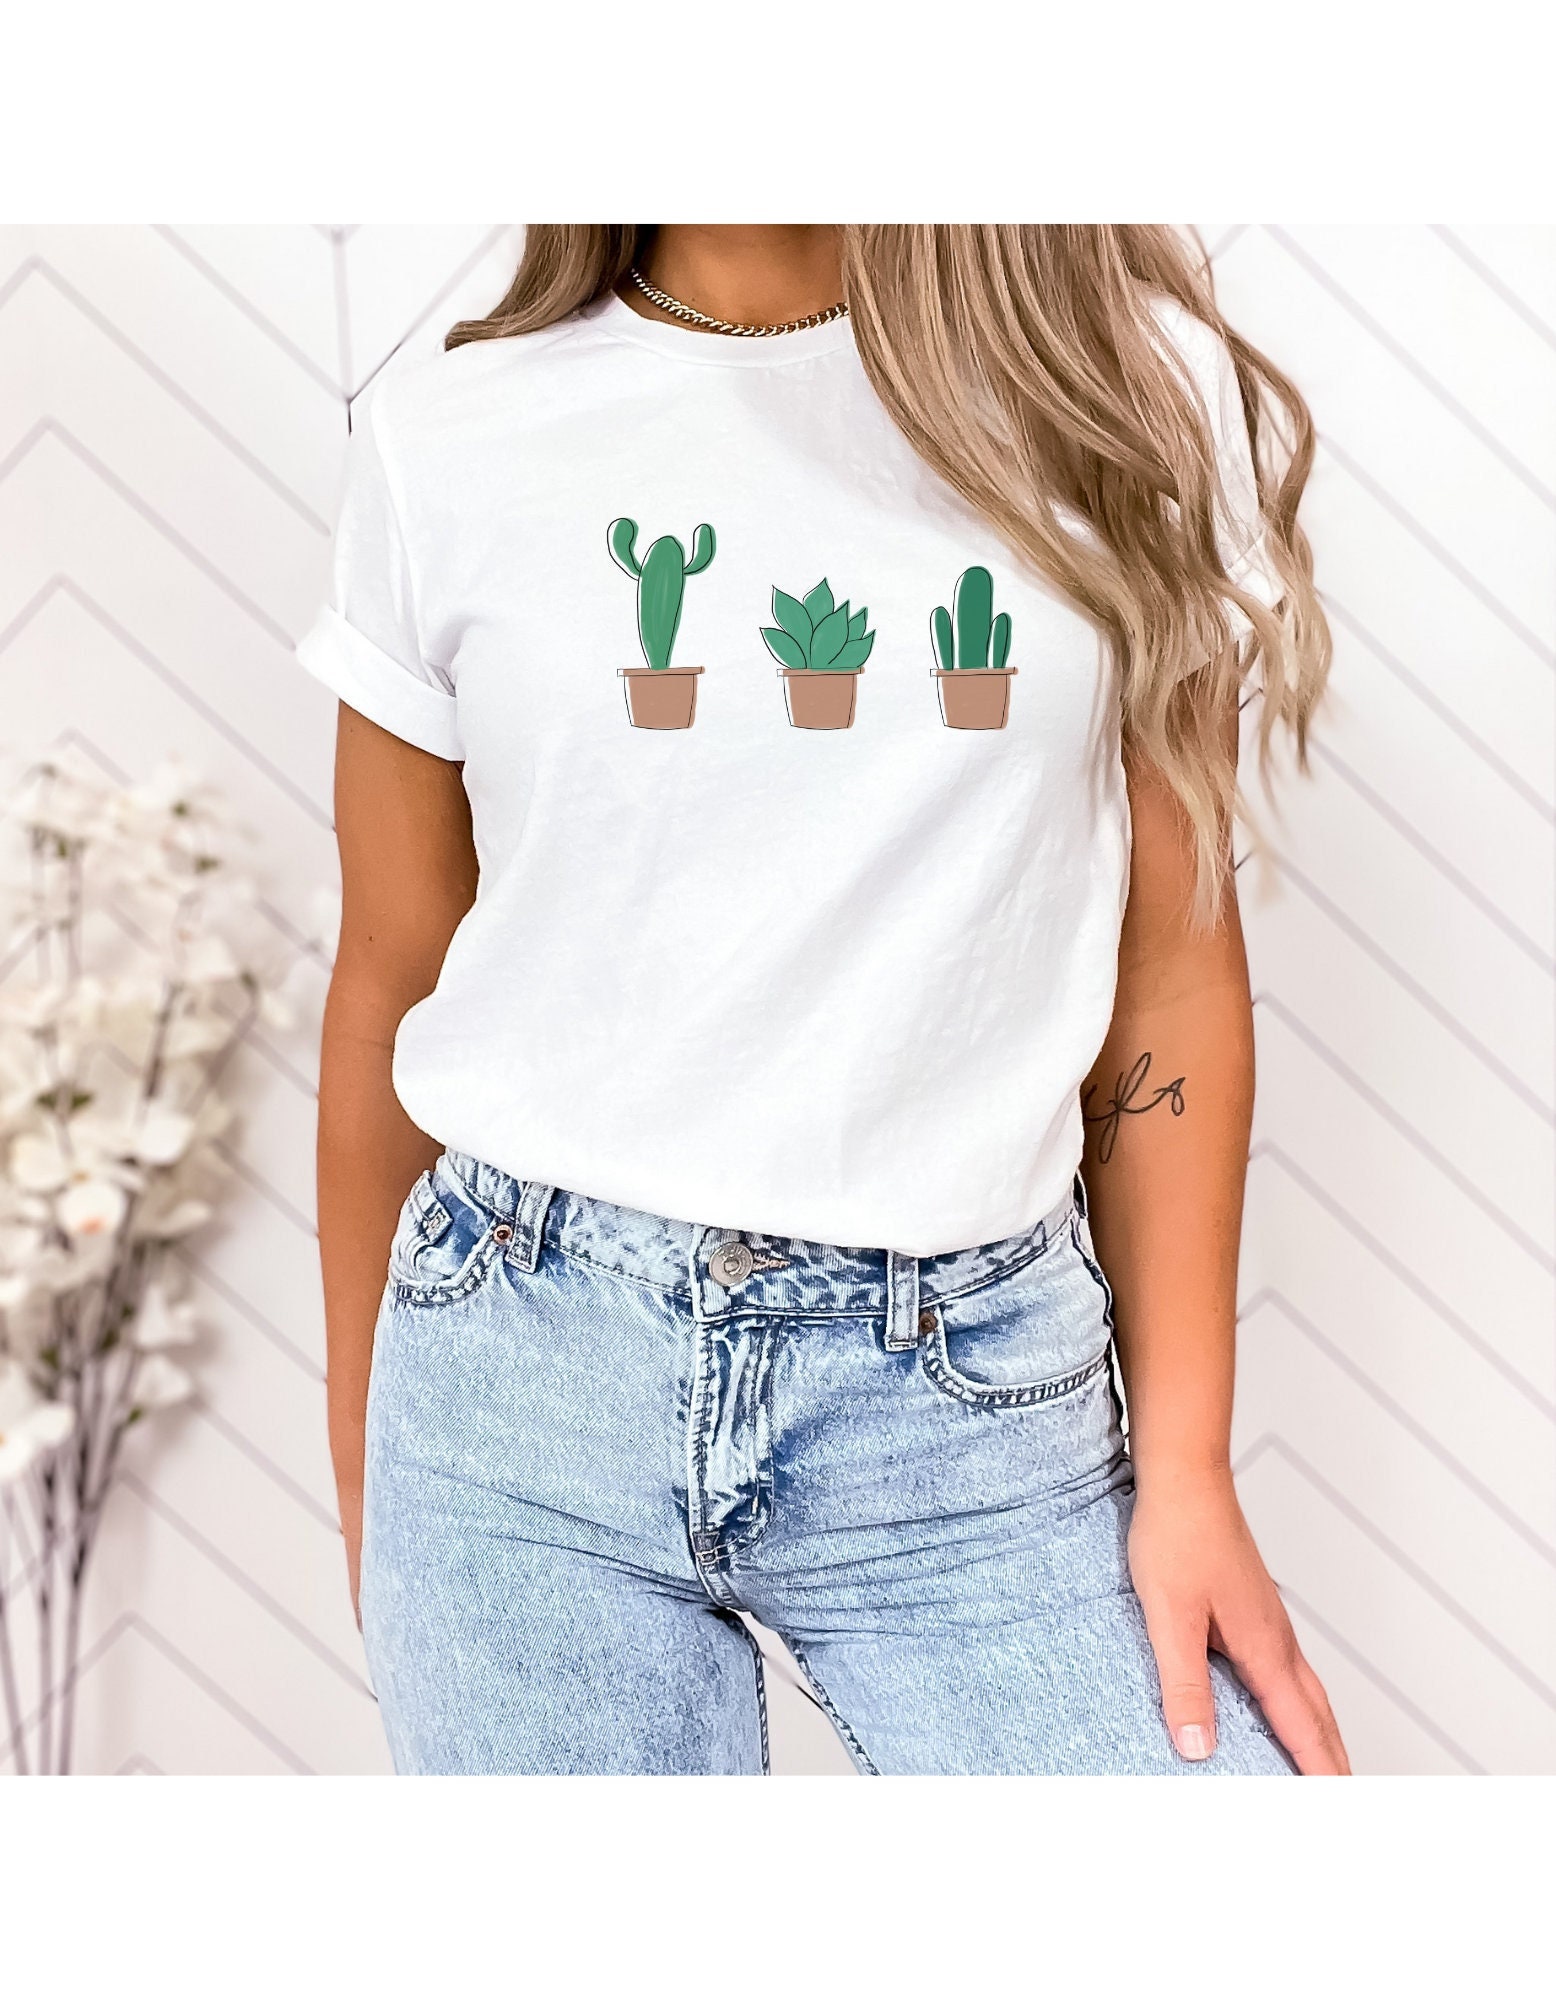 Cactus Unisex Aesthetic Patern Shirt - Etsy